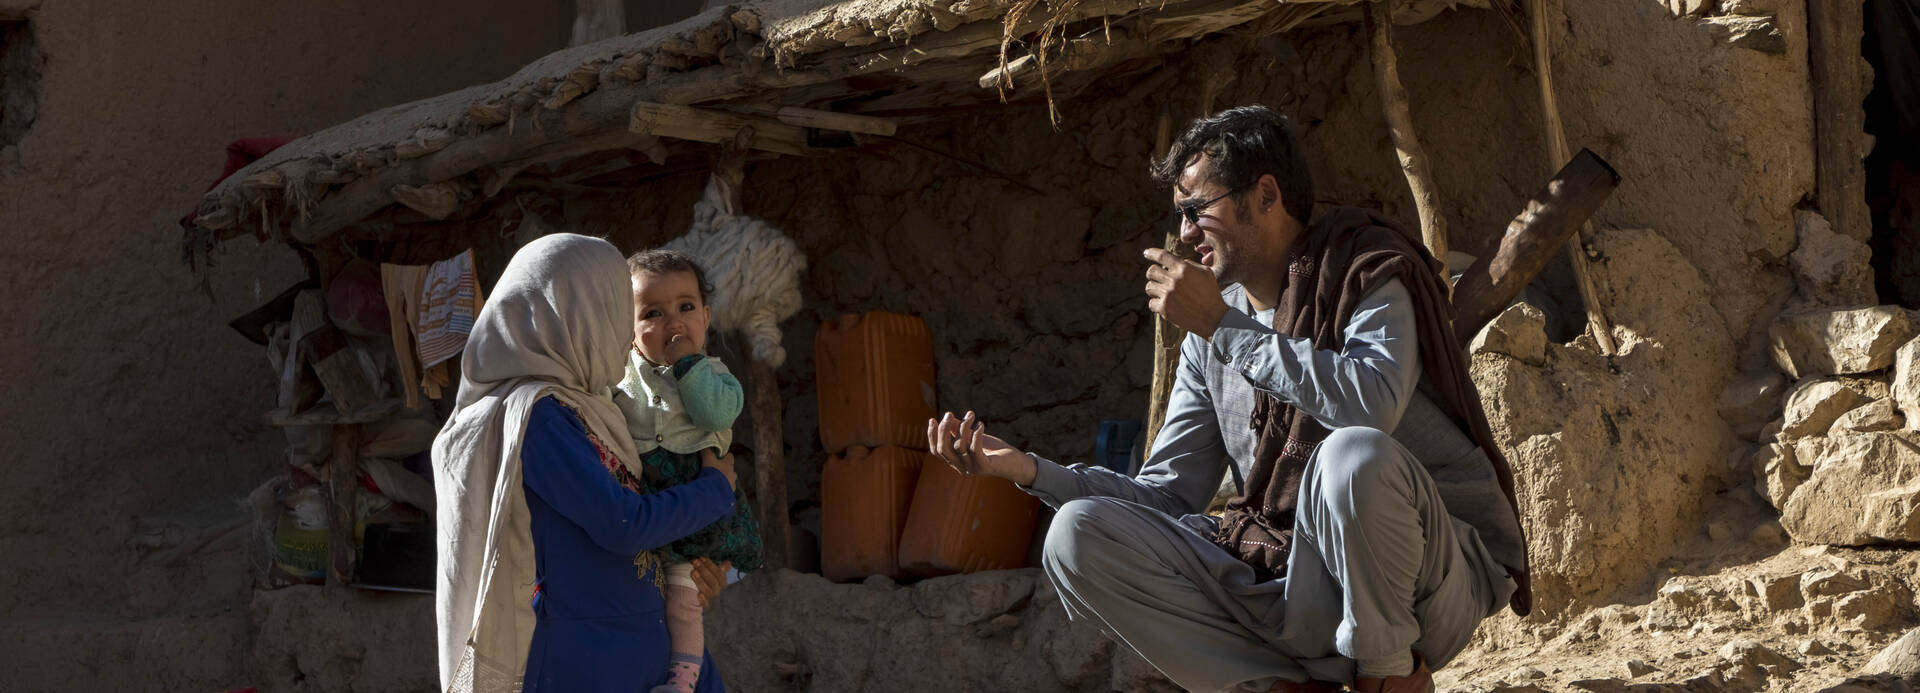 Eine dreiköpfige Familie vor ihrem halb zusammenfallenden Lehm-Haus in Afghanistan